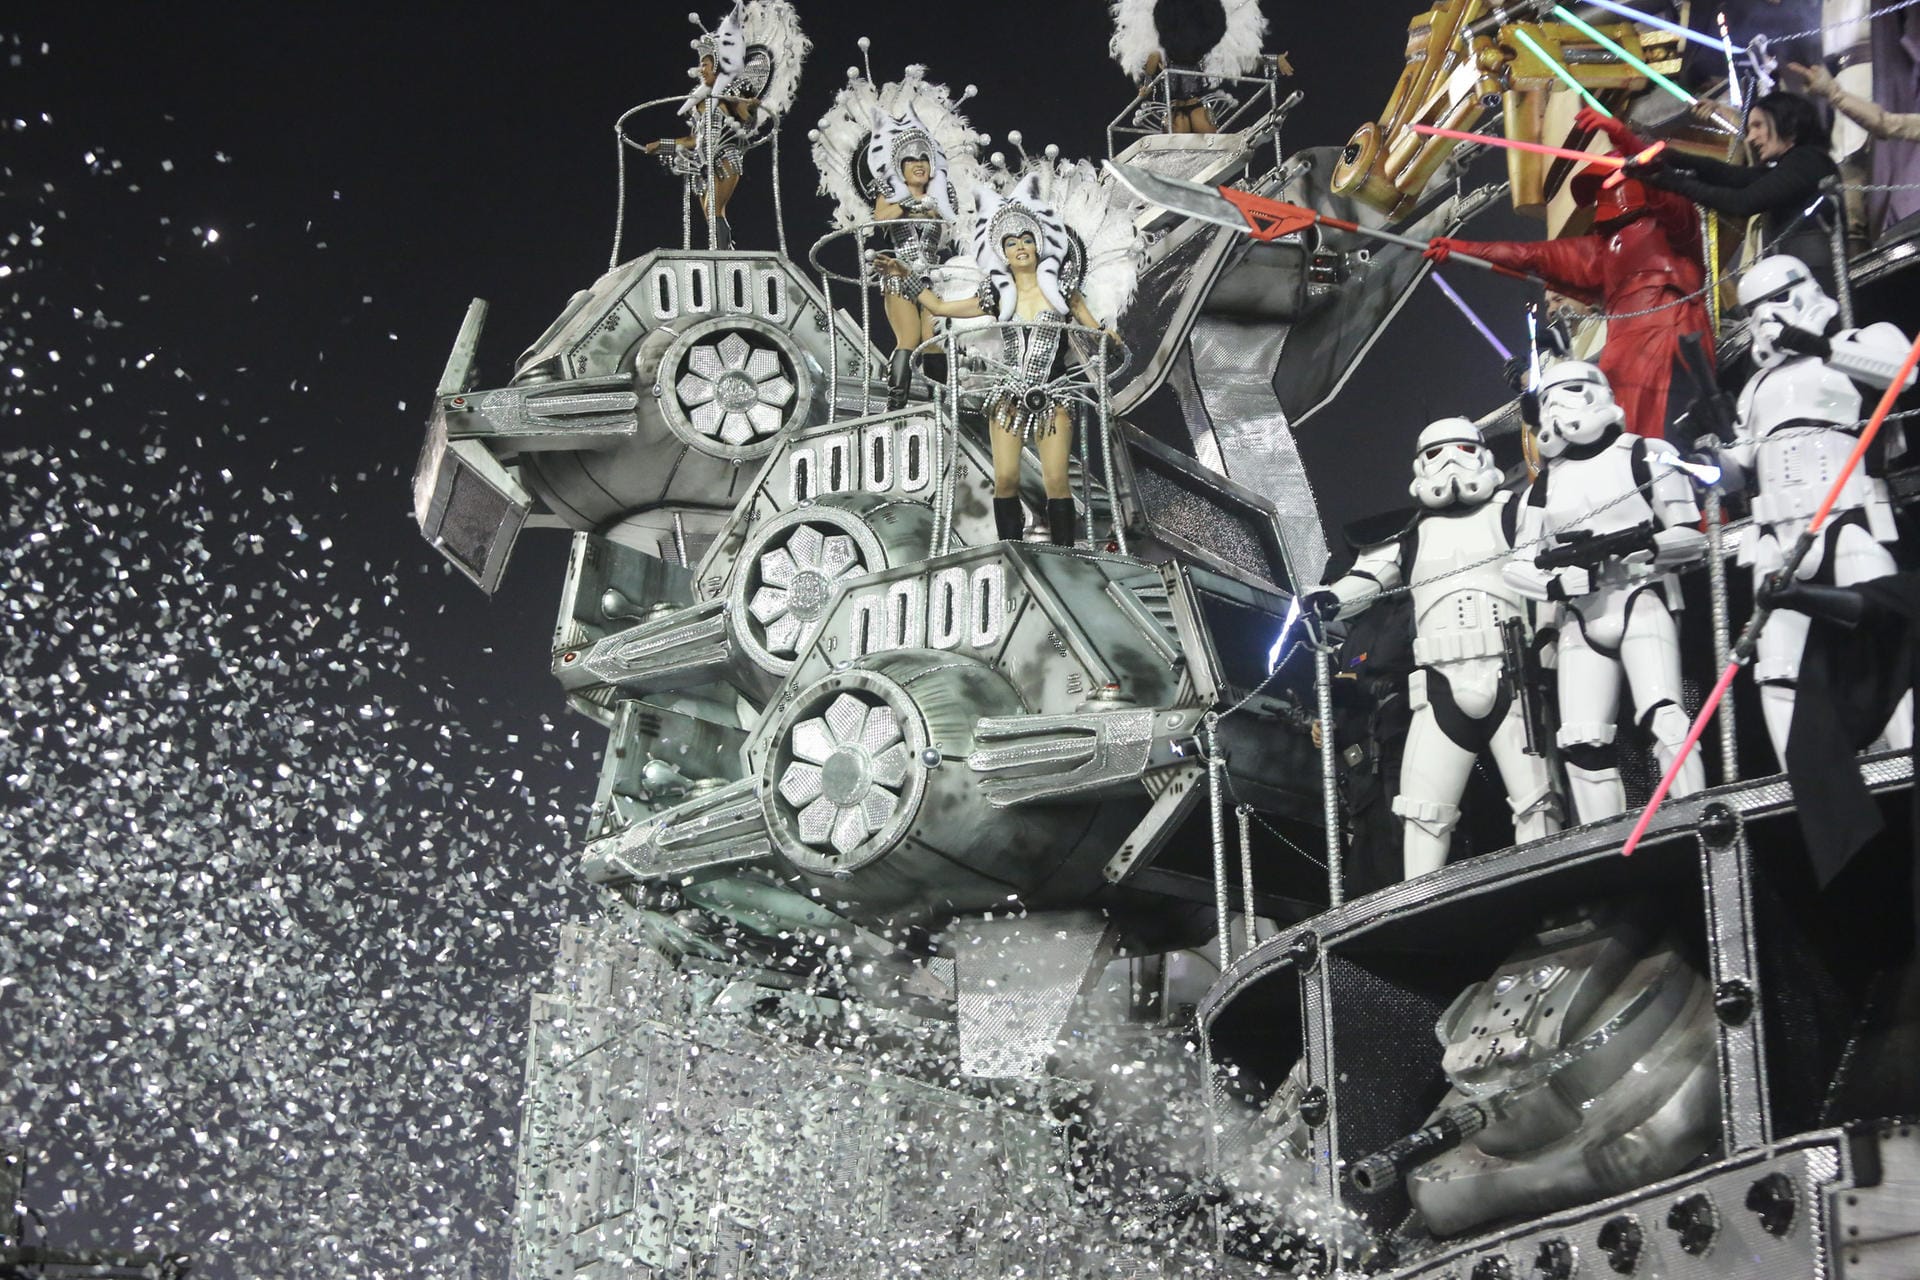 Diese Karnevalisten befuhren das Sambodromo mit einem Wagen, der ein Fahrzeug der "Star-Wars"-Filme nachahmt.